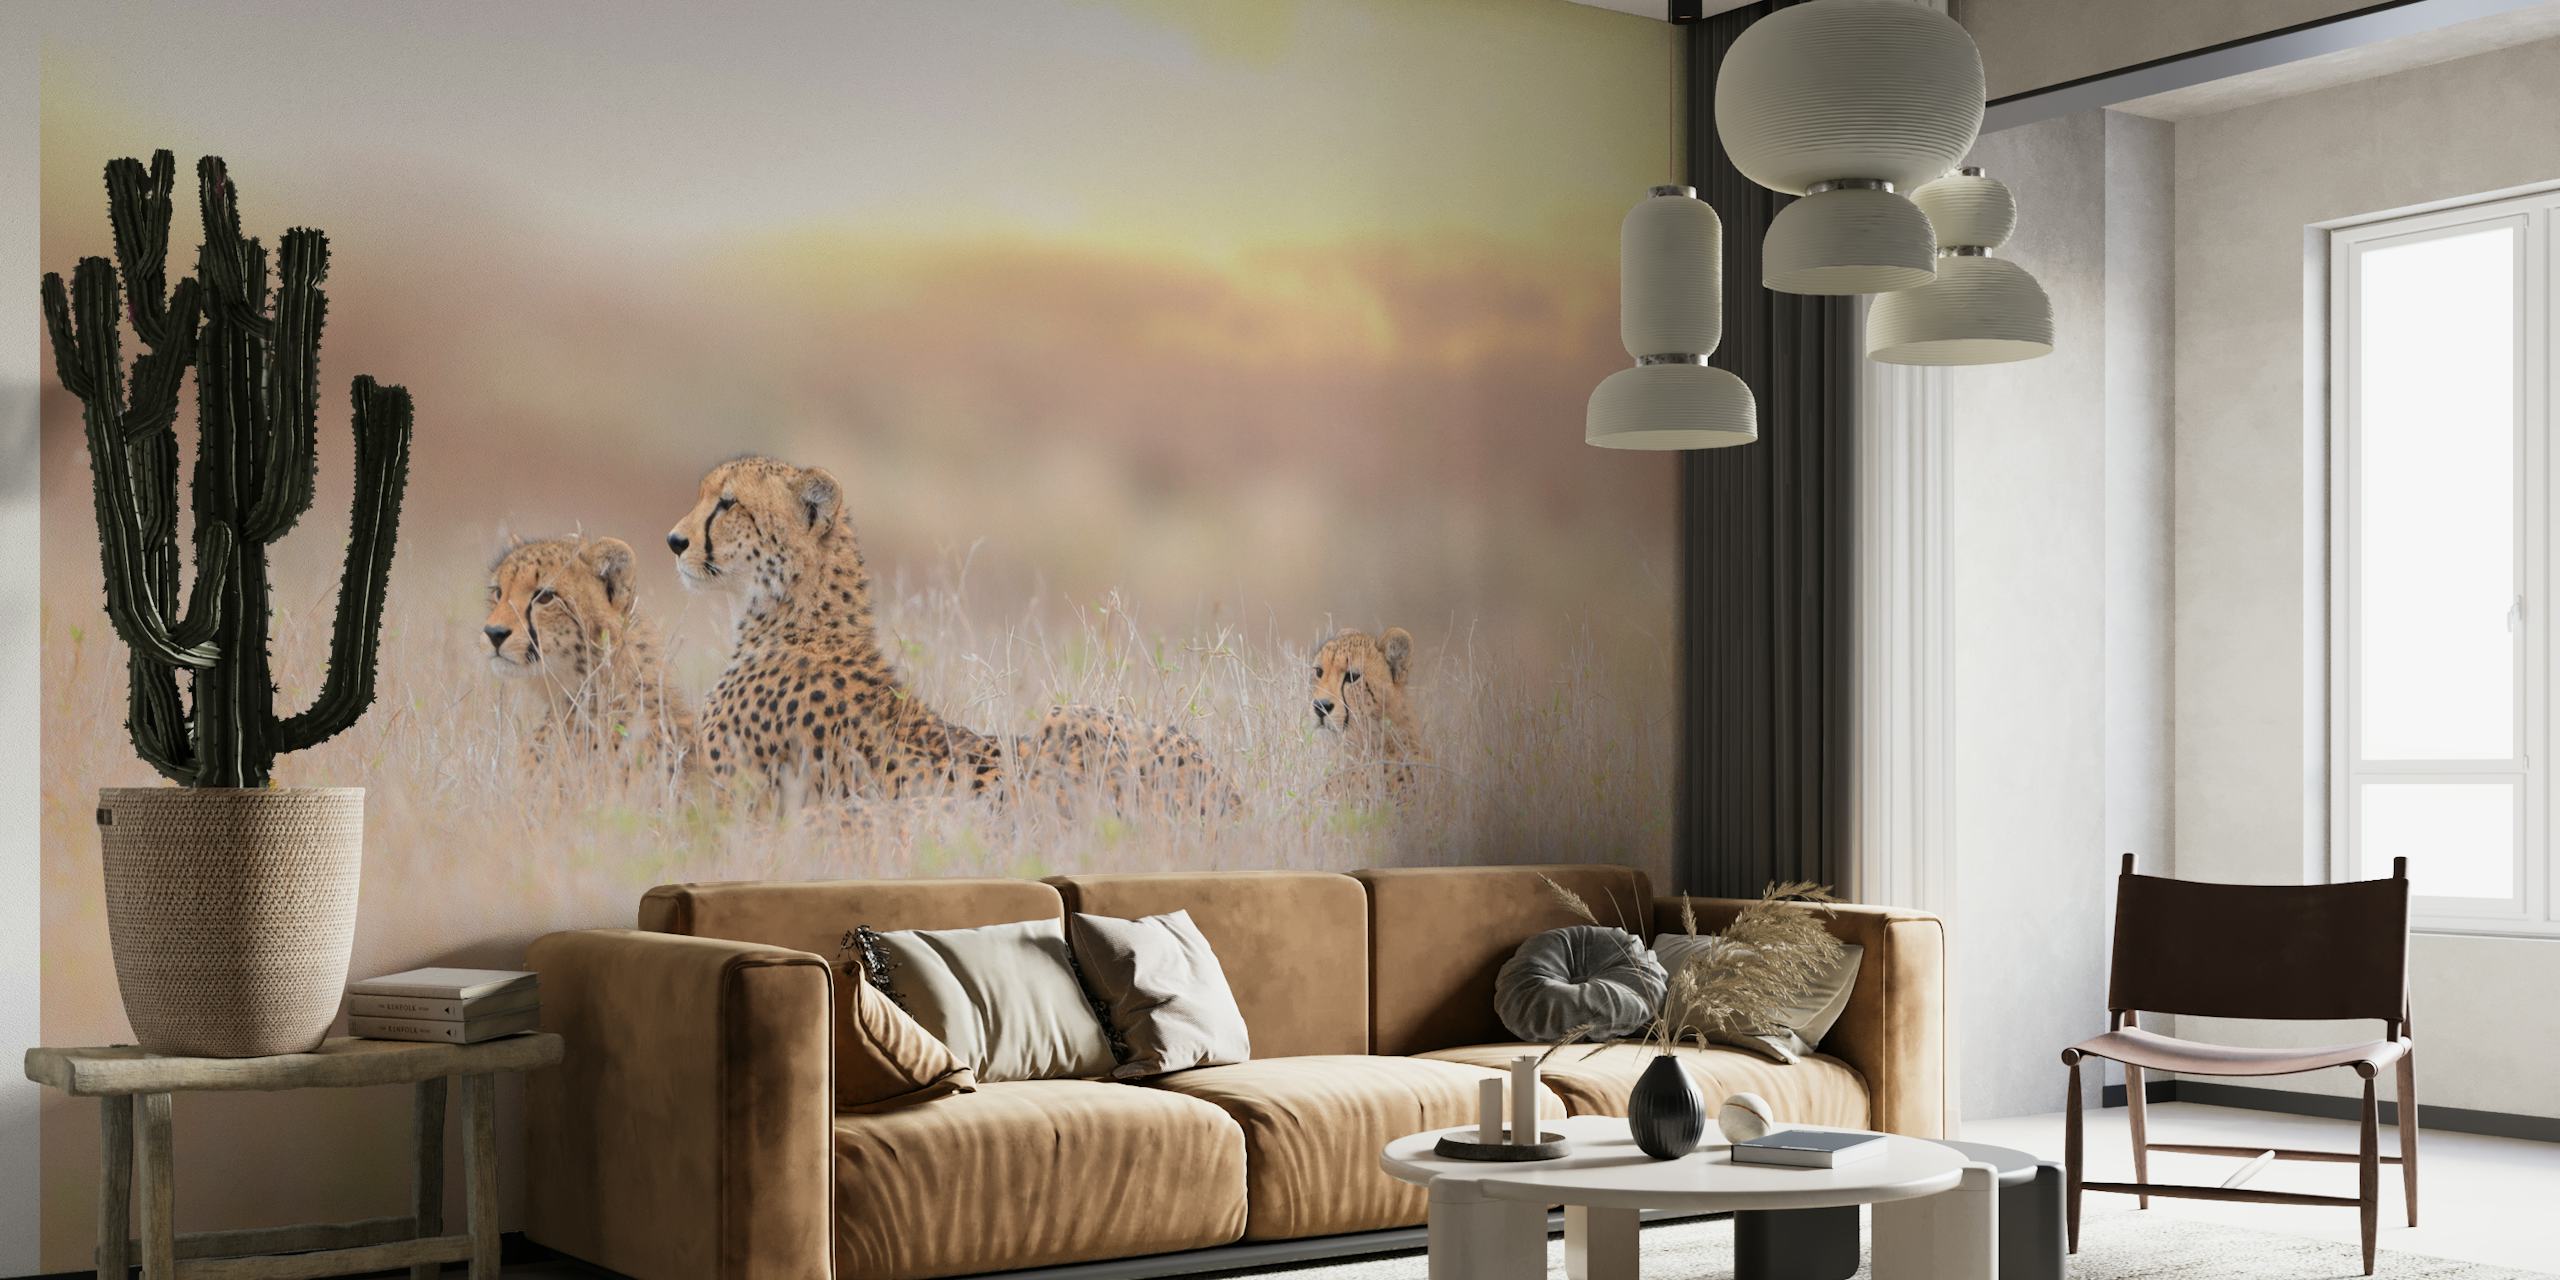 Cheetah mother and cubs wall mural in golden savannah grass